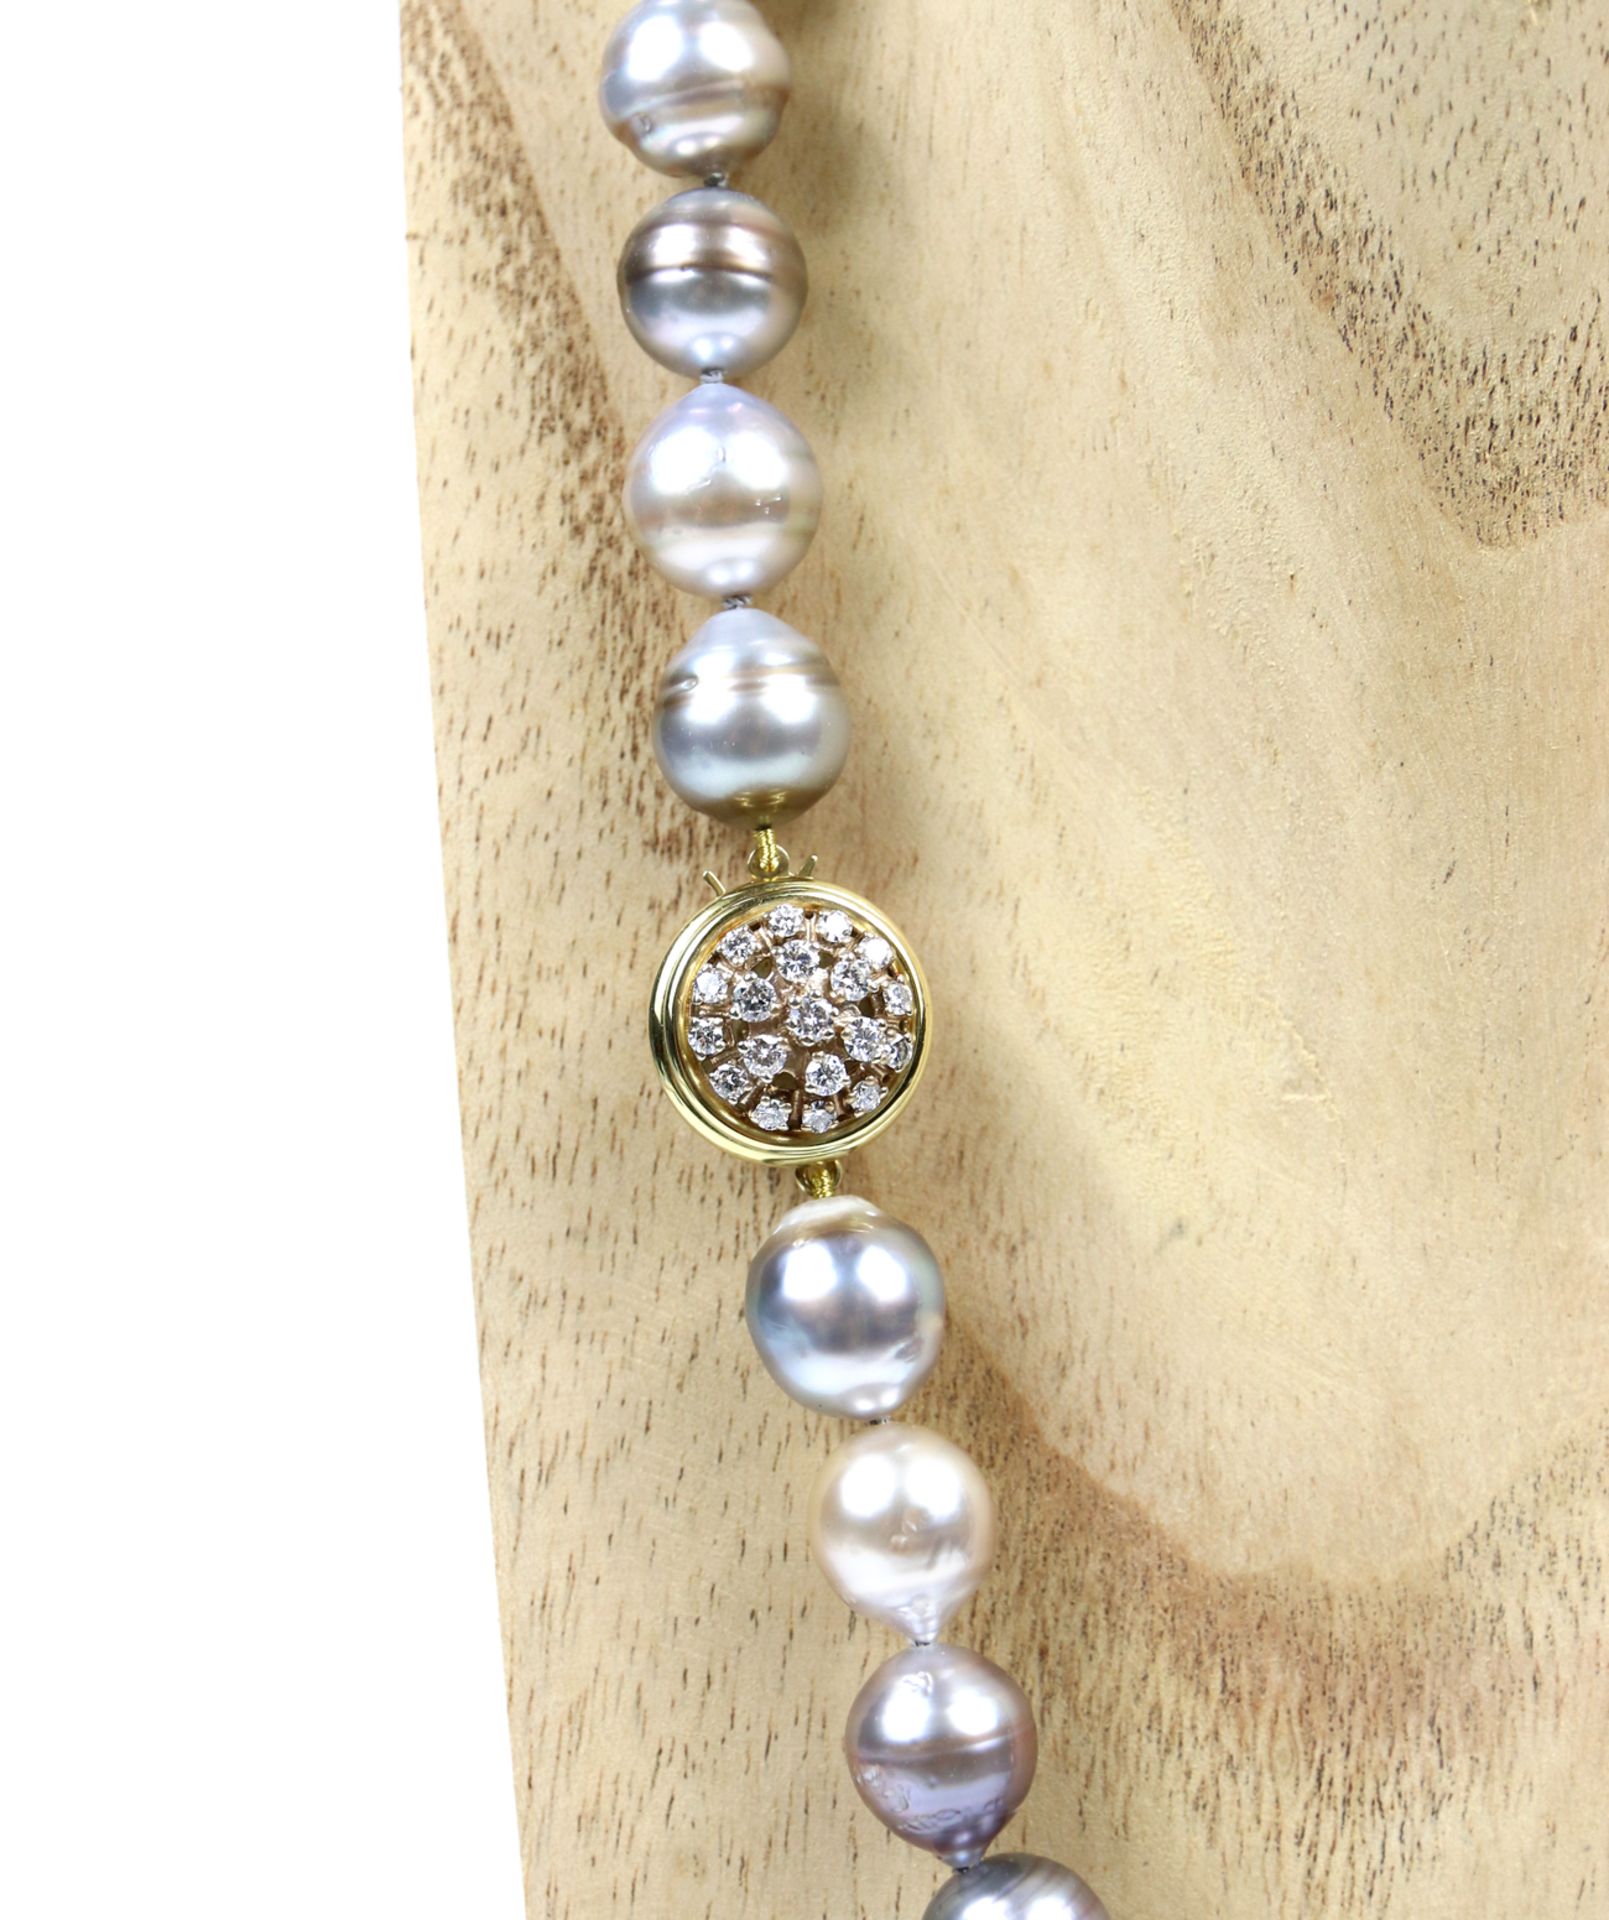 Perlenkette mit Brillant-Verschluss - Image 6 of 6